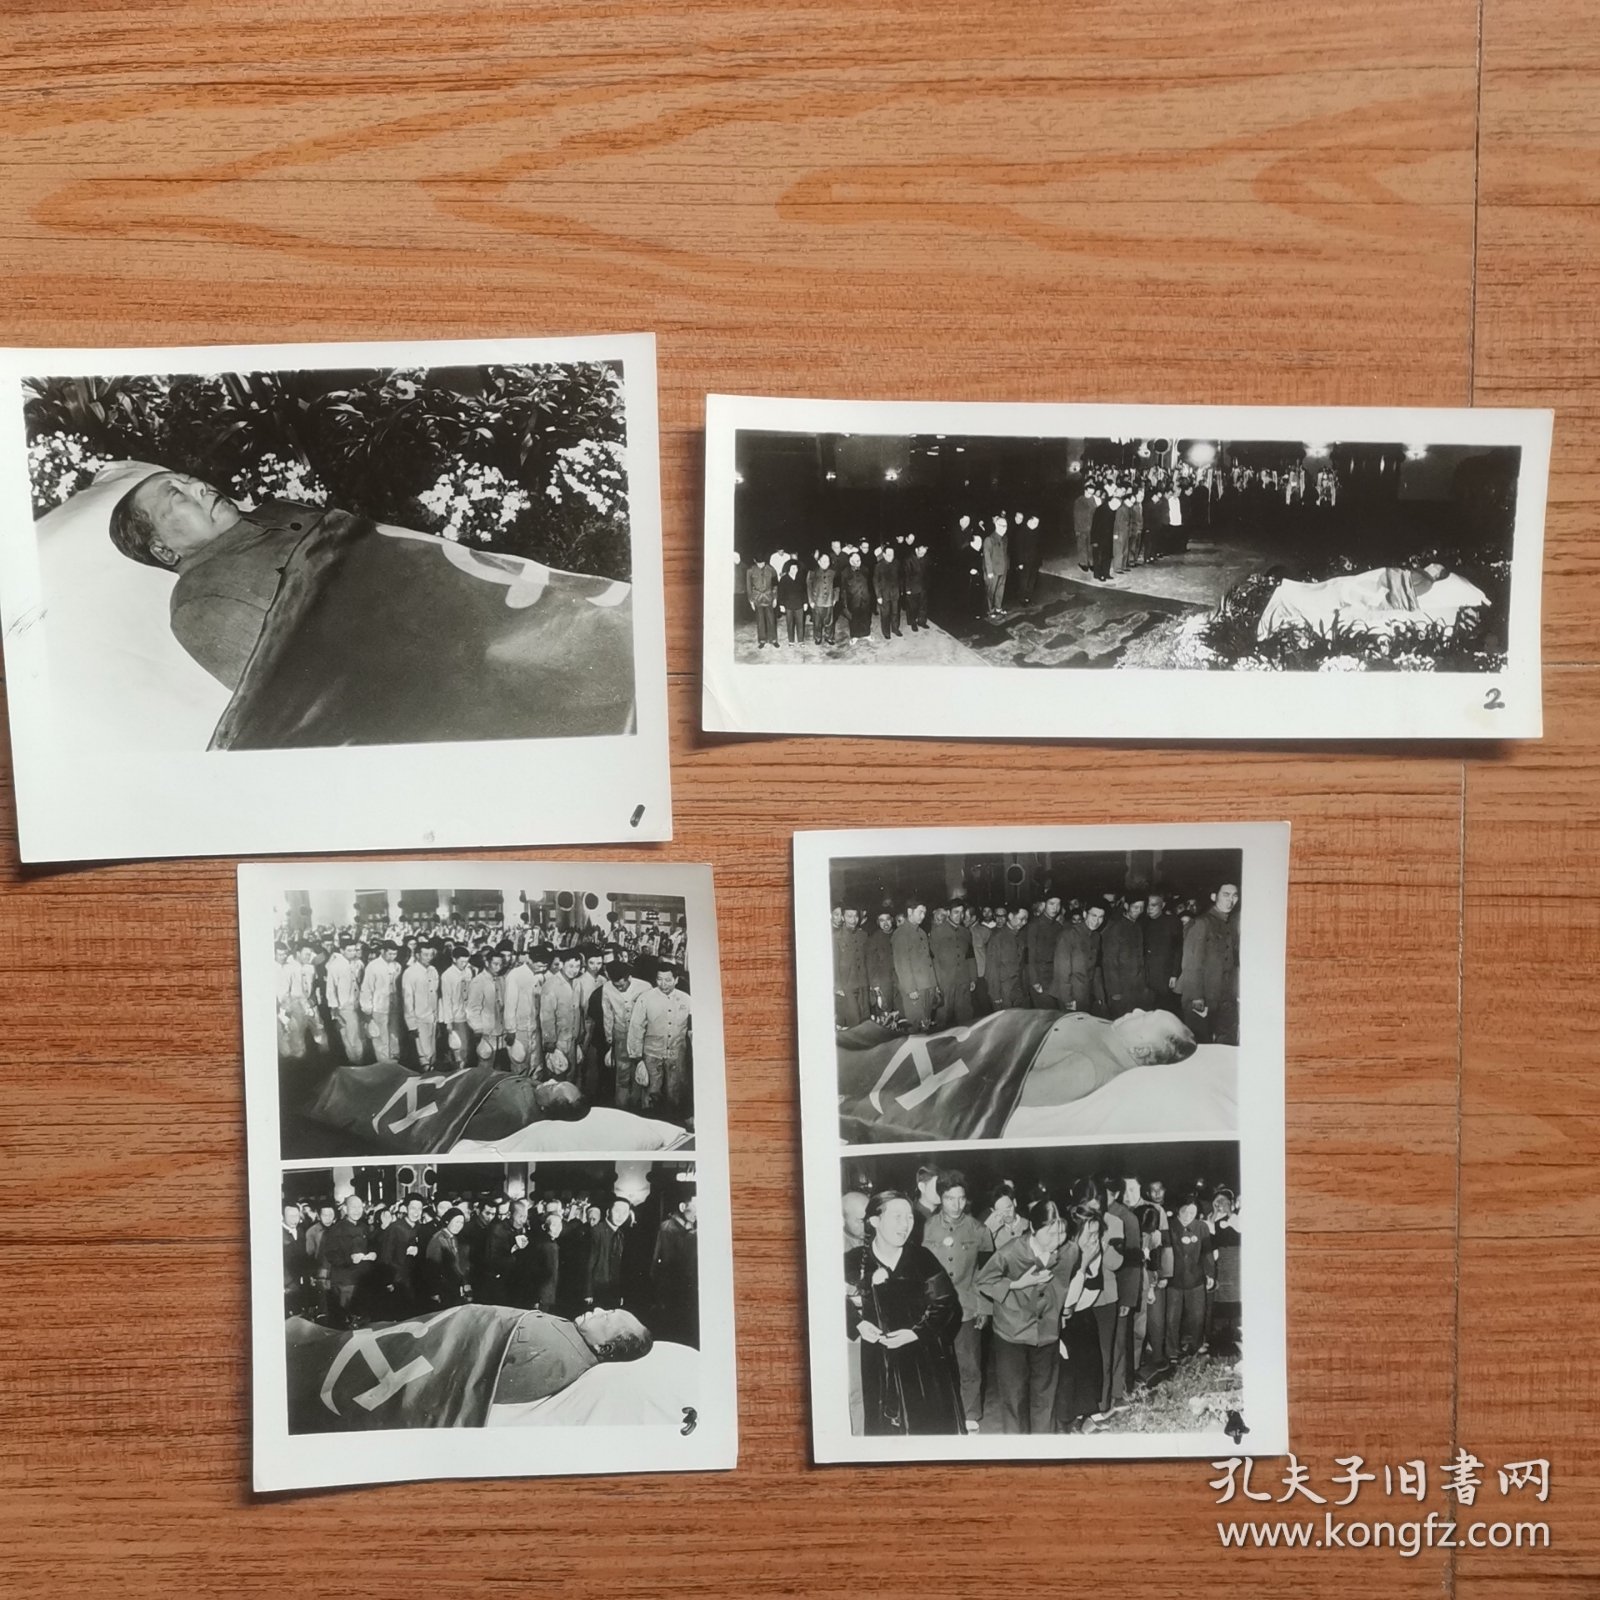 伟大领袖毛主席逝世追悼会老照片29张